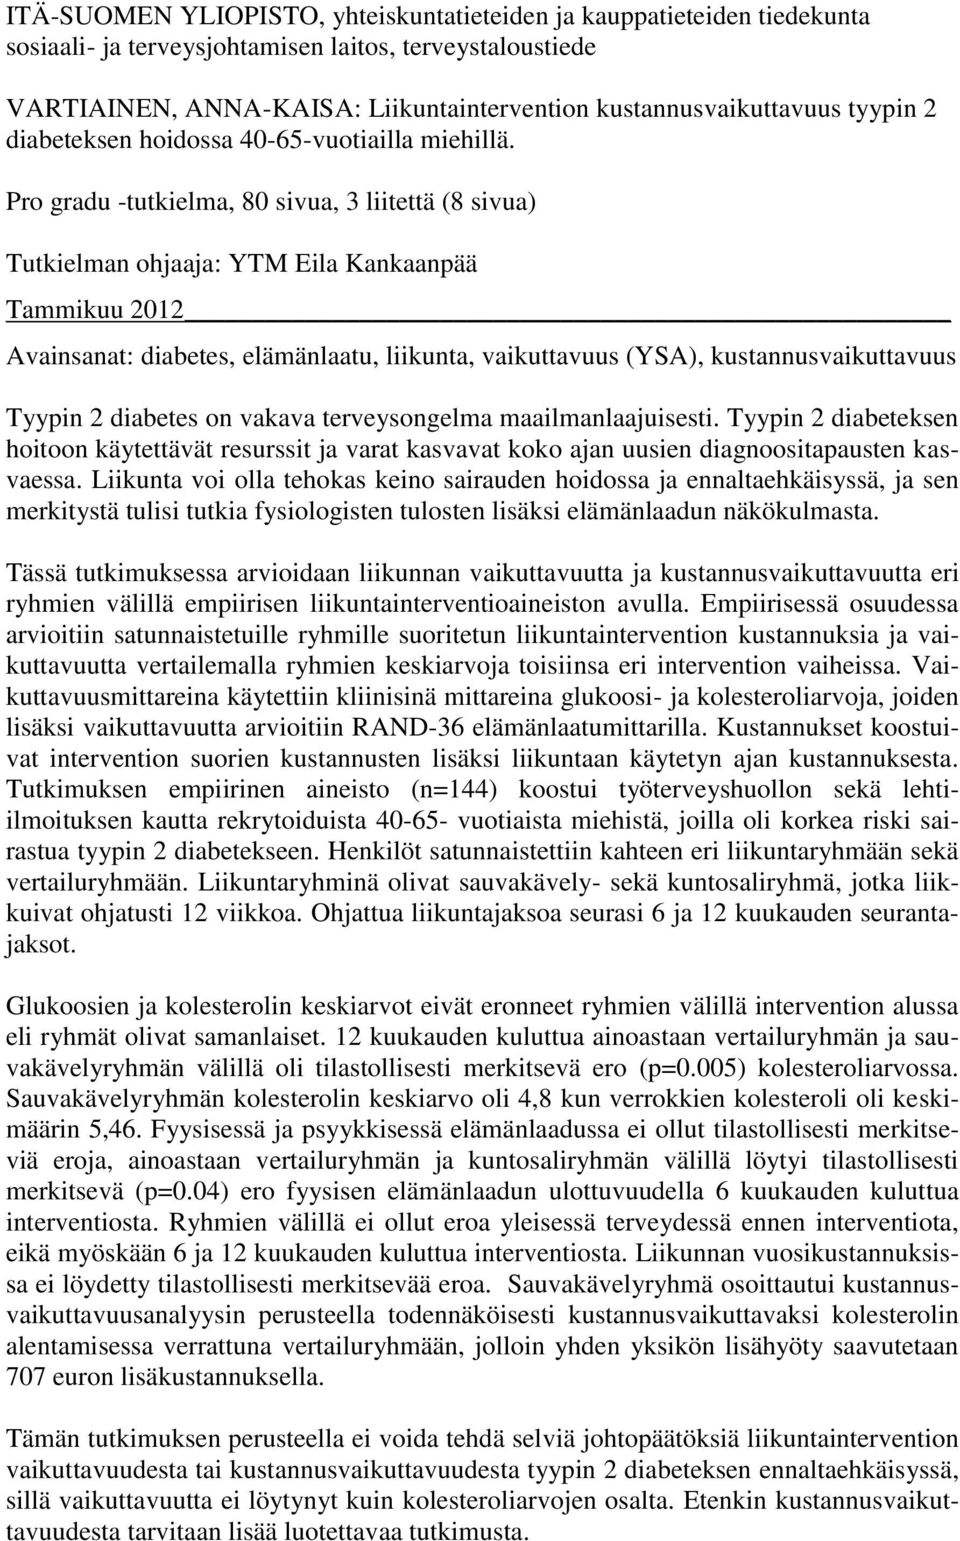 Pro gradu -tutkielma, 80 sivua, 3 liitettä (8 sivua) Tutkielman ohjaaja: YTM Eila Kankaanpää Tammikuu 2012 Avainsanat: diabetes, elämänlaatu, liikunta, vaikuttavuus (YSA), kustannusvaikuttavuus